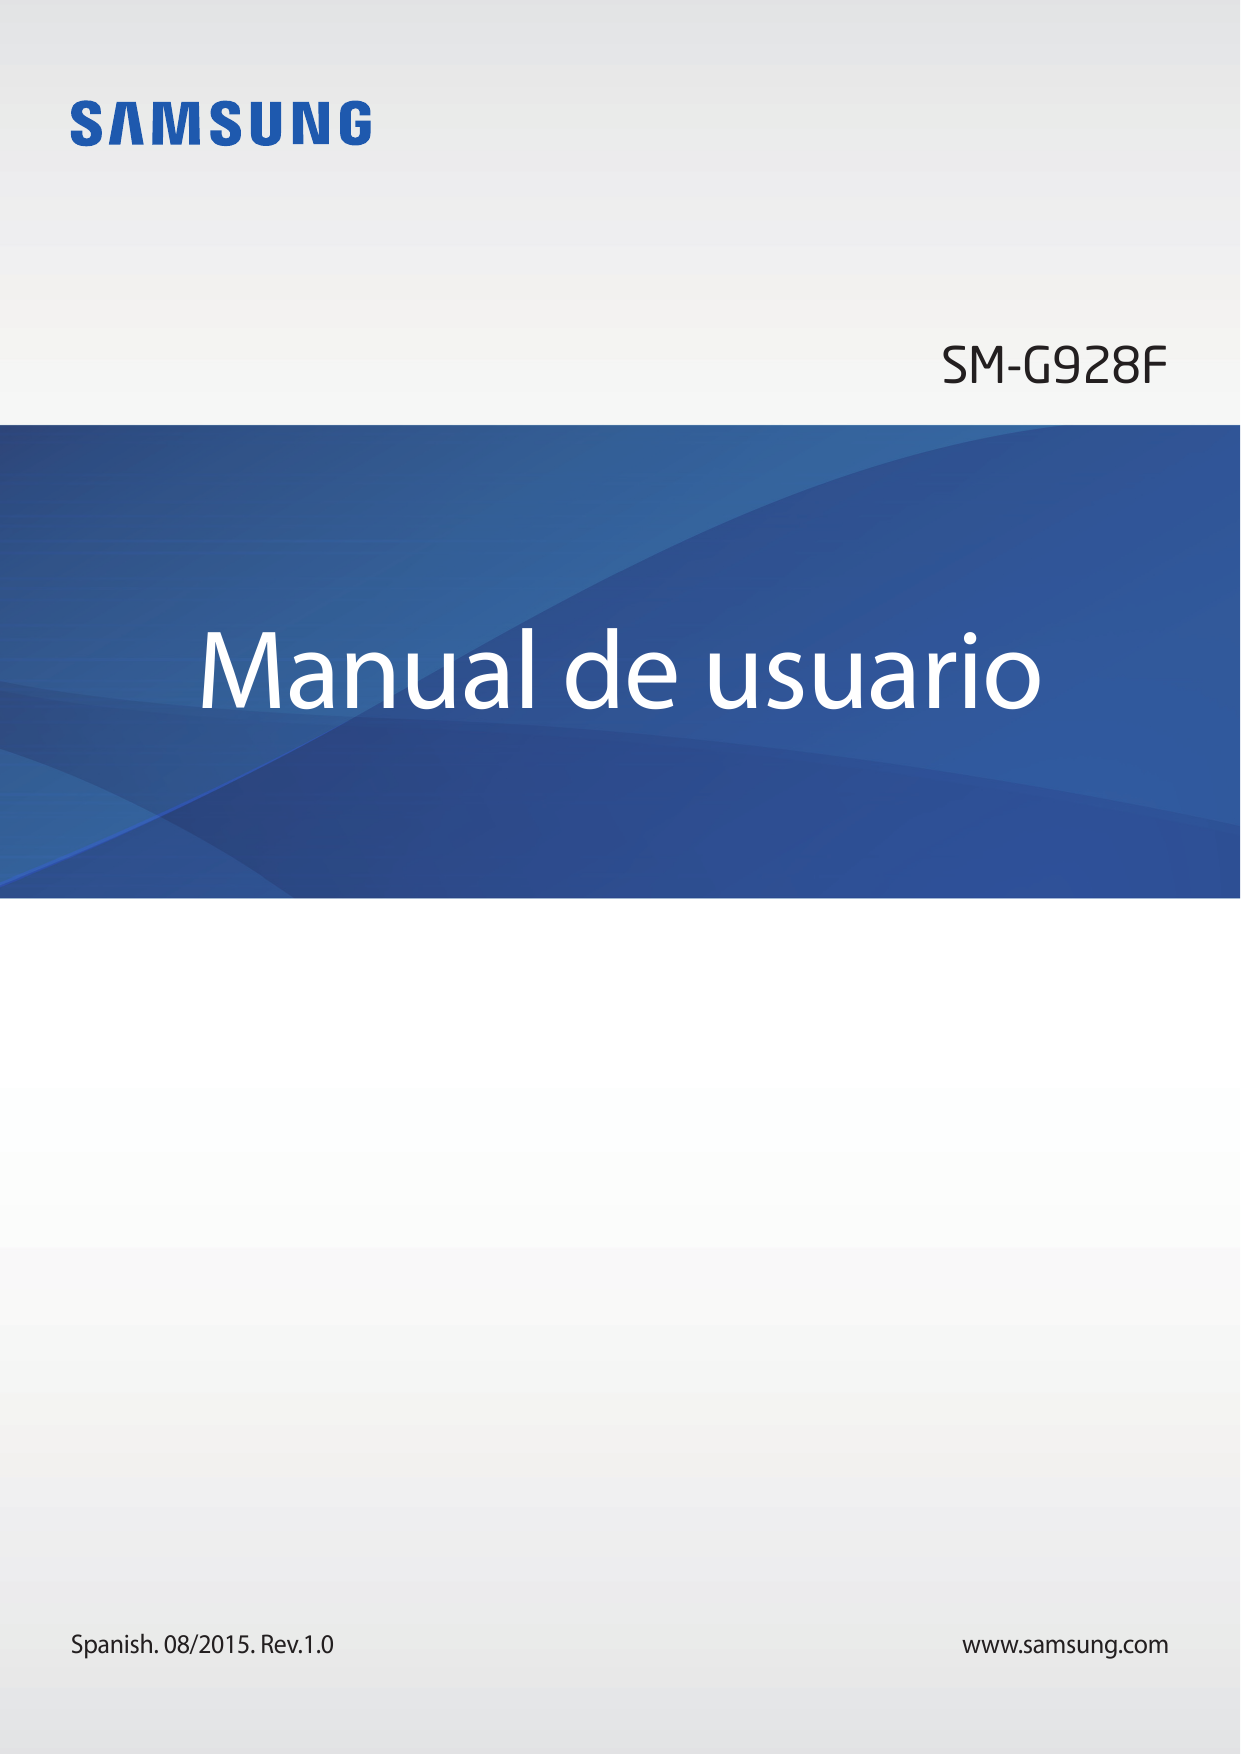 SM-G928FManual de usuarioSpanish. 08/2015. Rev.1.0www.samsung.com